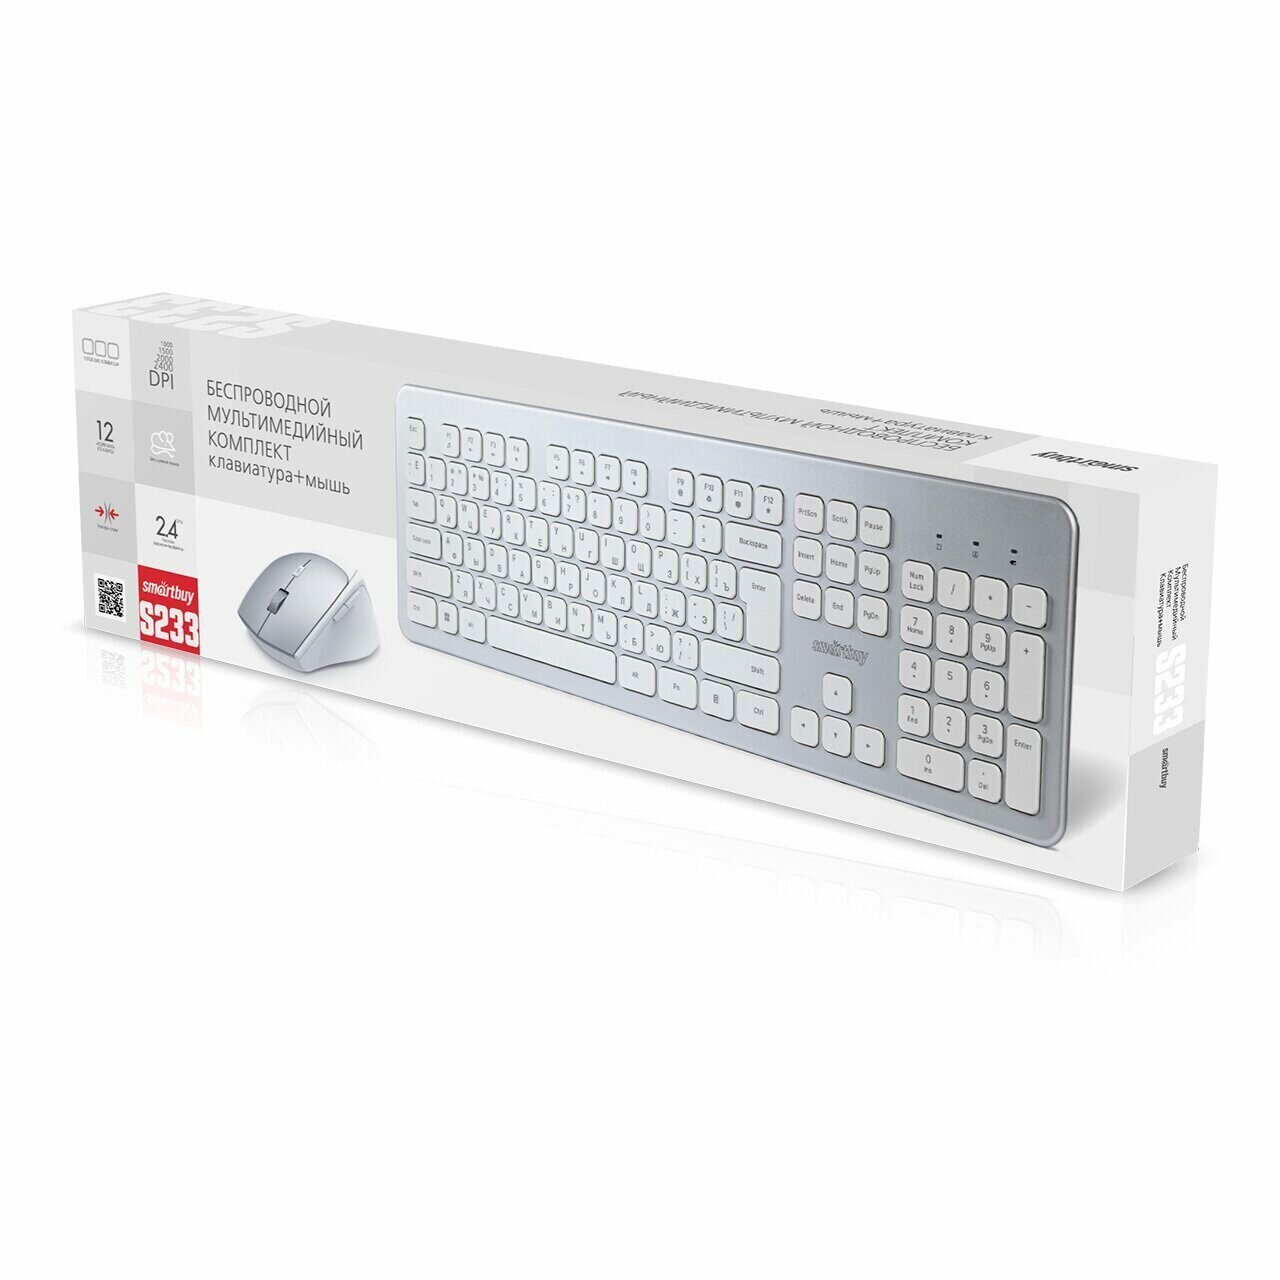 Комплект клавиатура+мышь мультимедийный серебристо-белый 233616AG Smartbuy